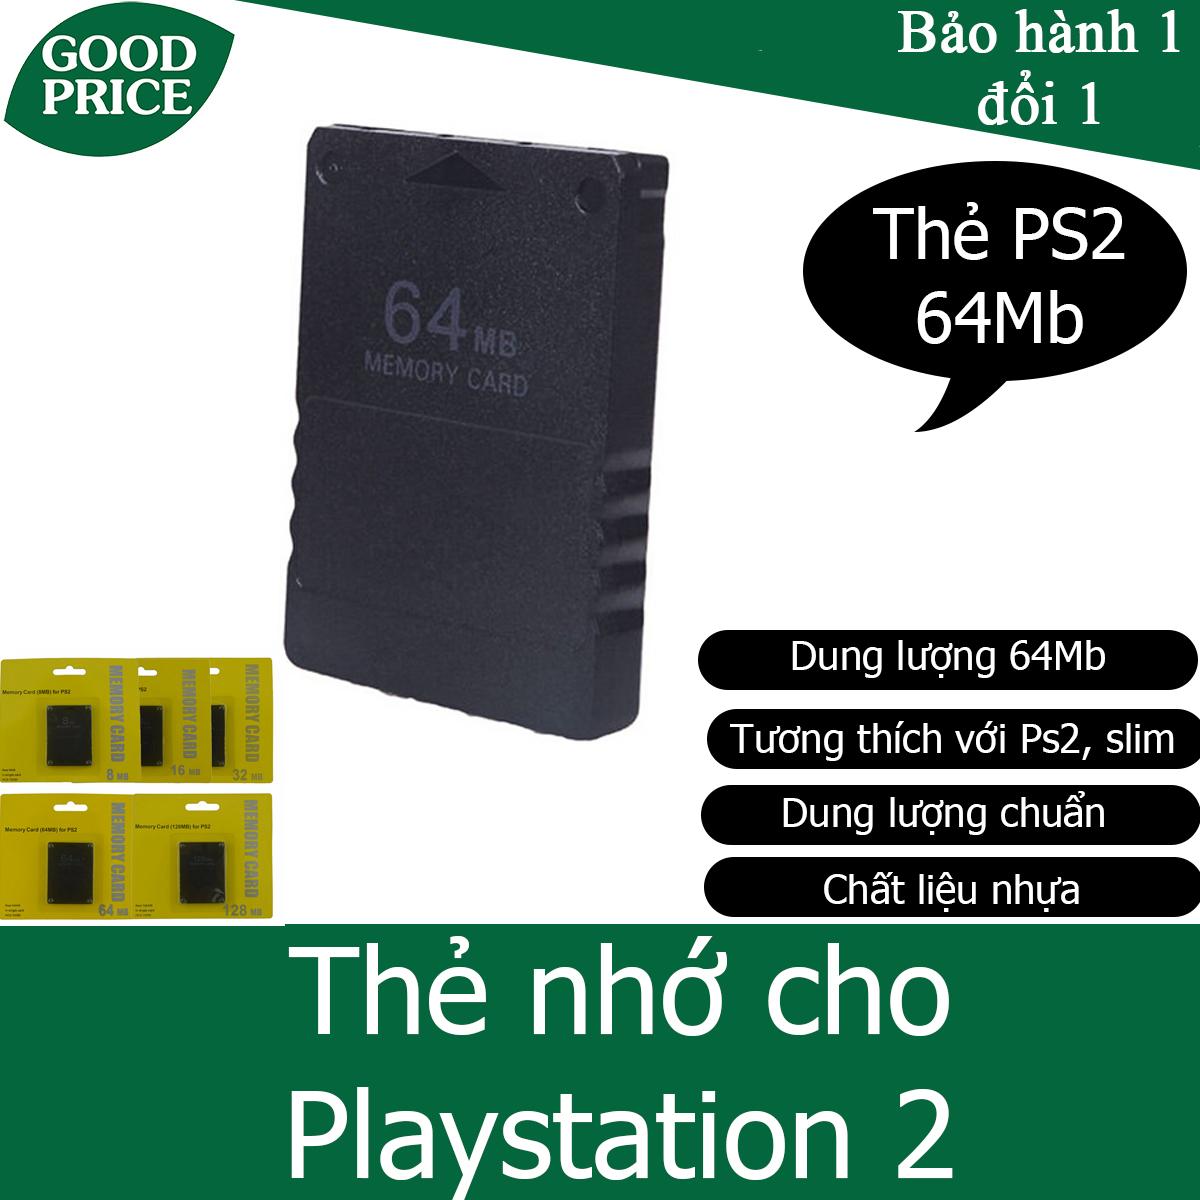 Thẻ nhớ cho máy chơi game Playstation 2, PS2 - dung lượng 64Mb